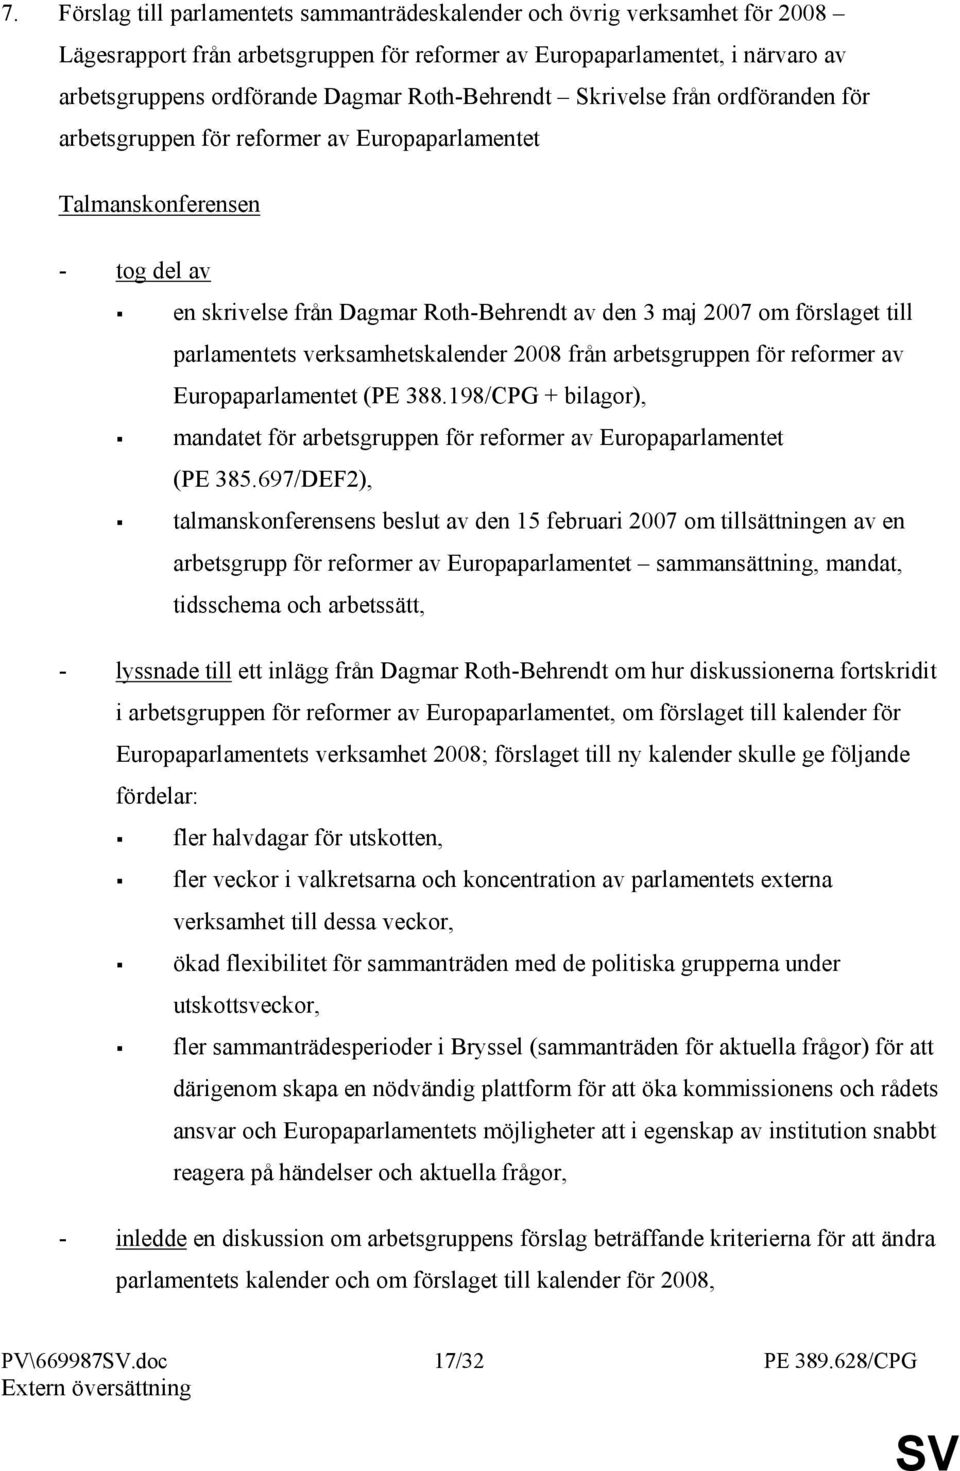 parlamentets verksamhetskalender 2008 från arbetsgruppen för reformer av Europaparlamentet (PE 388.198/CPG + bilagor), mandatet för arbetsgruppen för reformer av Europaparlamentet (PE 385.